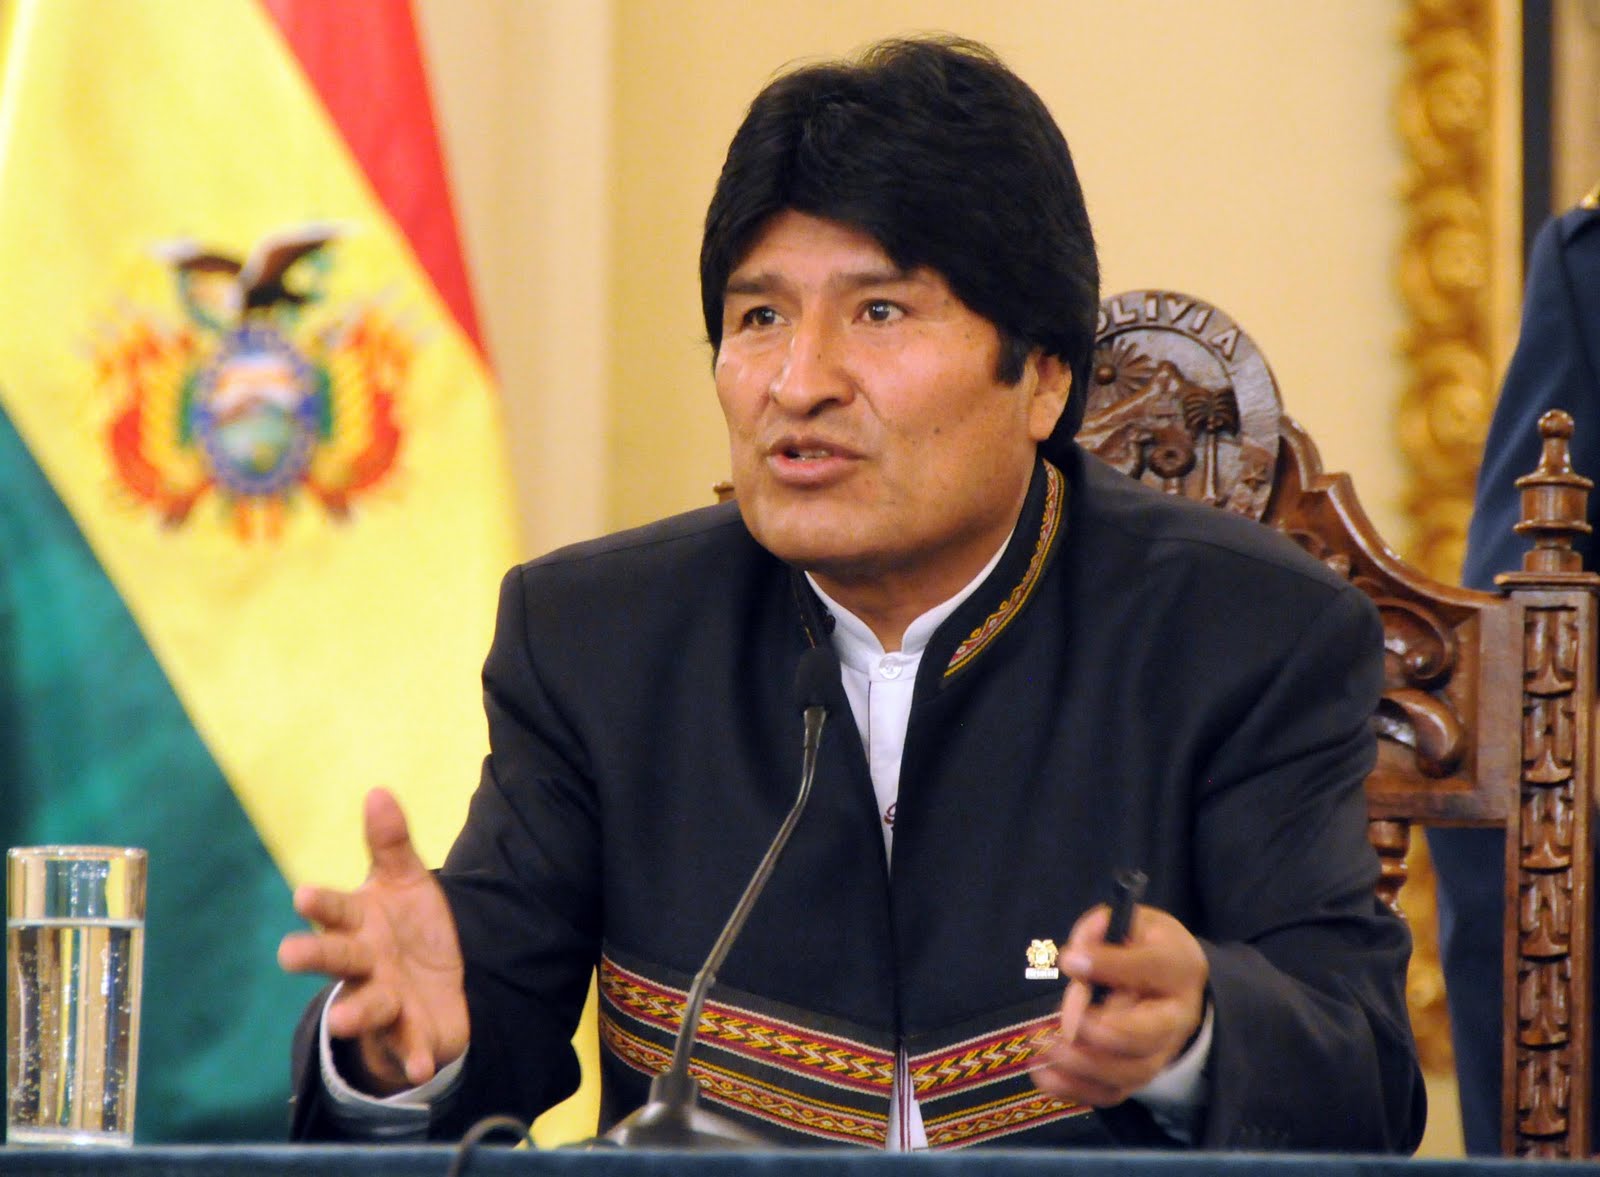 El presidente boliviano Evo Morales señaló que a los proimperialistas y procapitalistas no les interesa la Patria, sino el dinero.